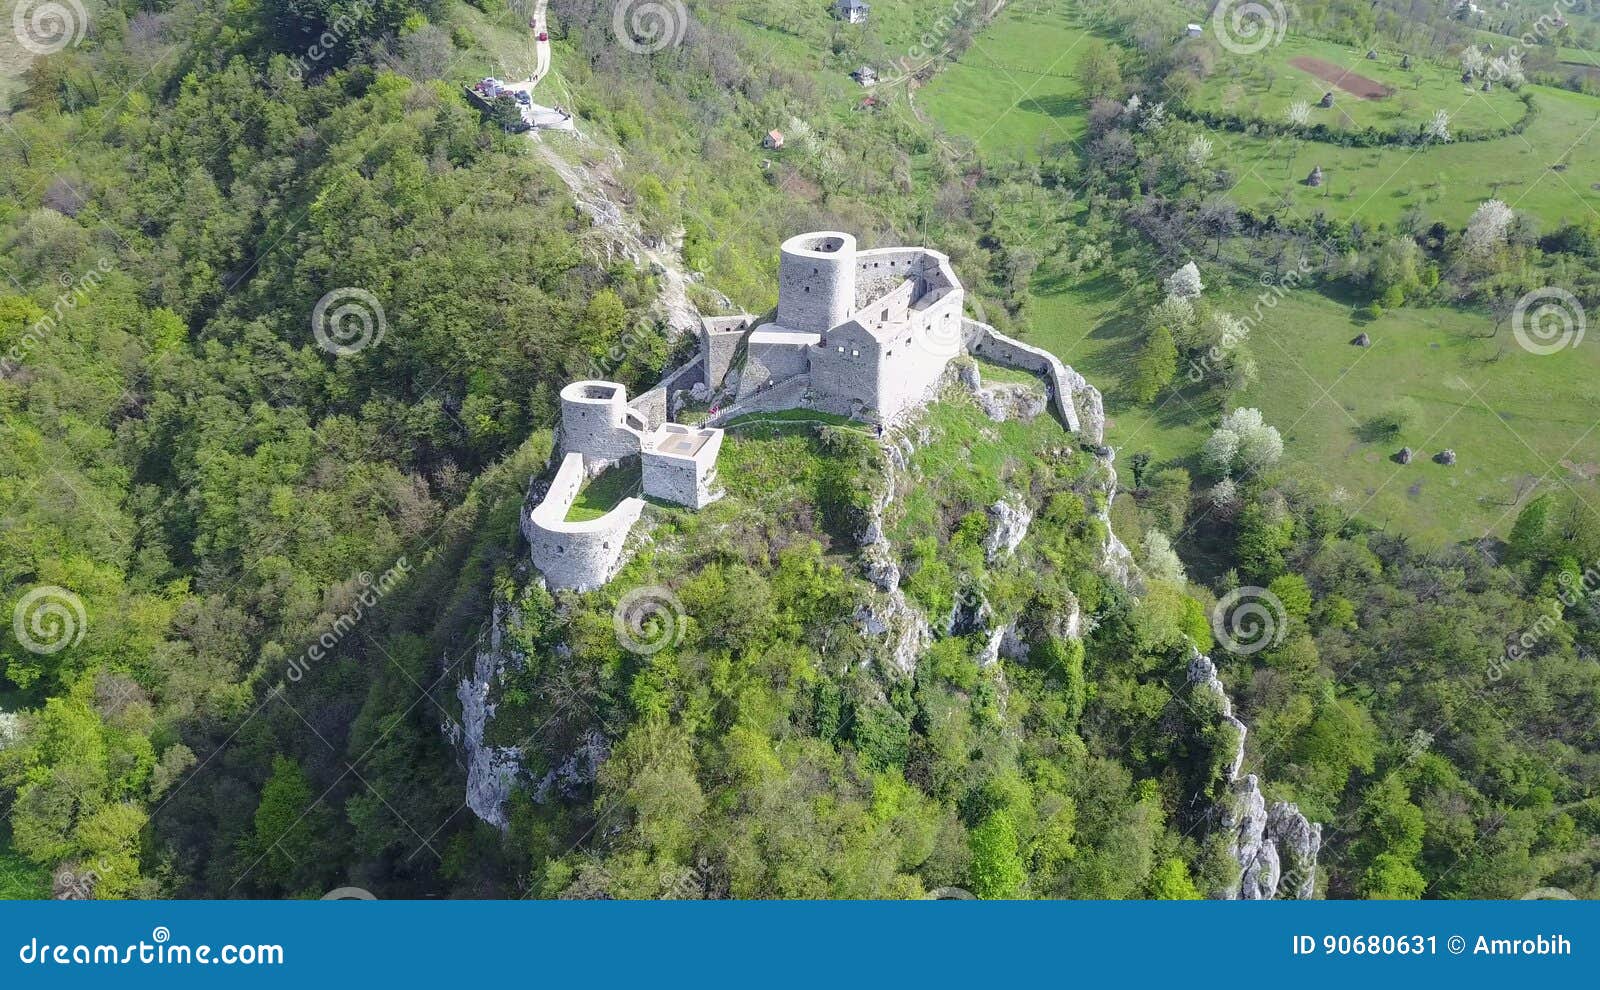 srebrenik fortress